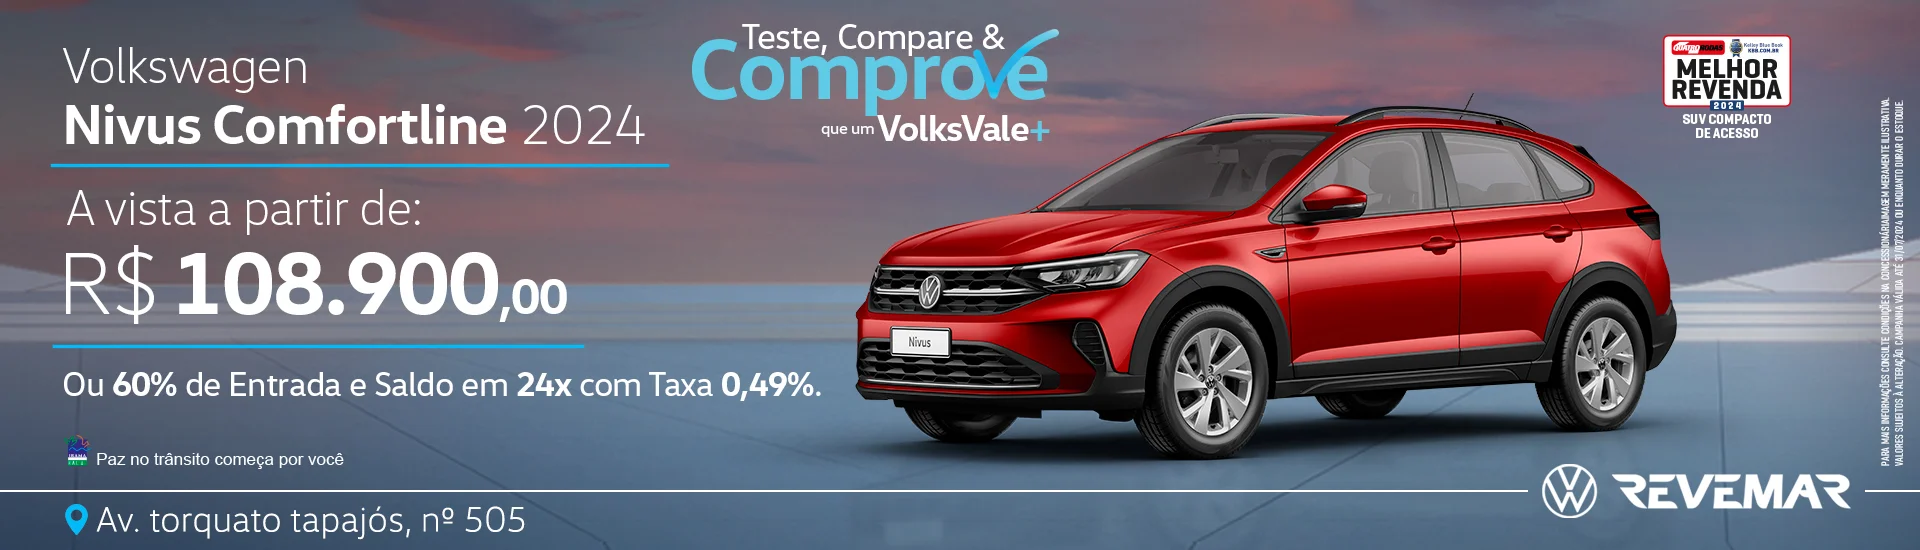 Teste, Compare e Comprove que um VolksVale+